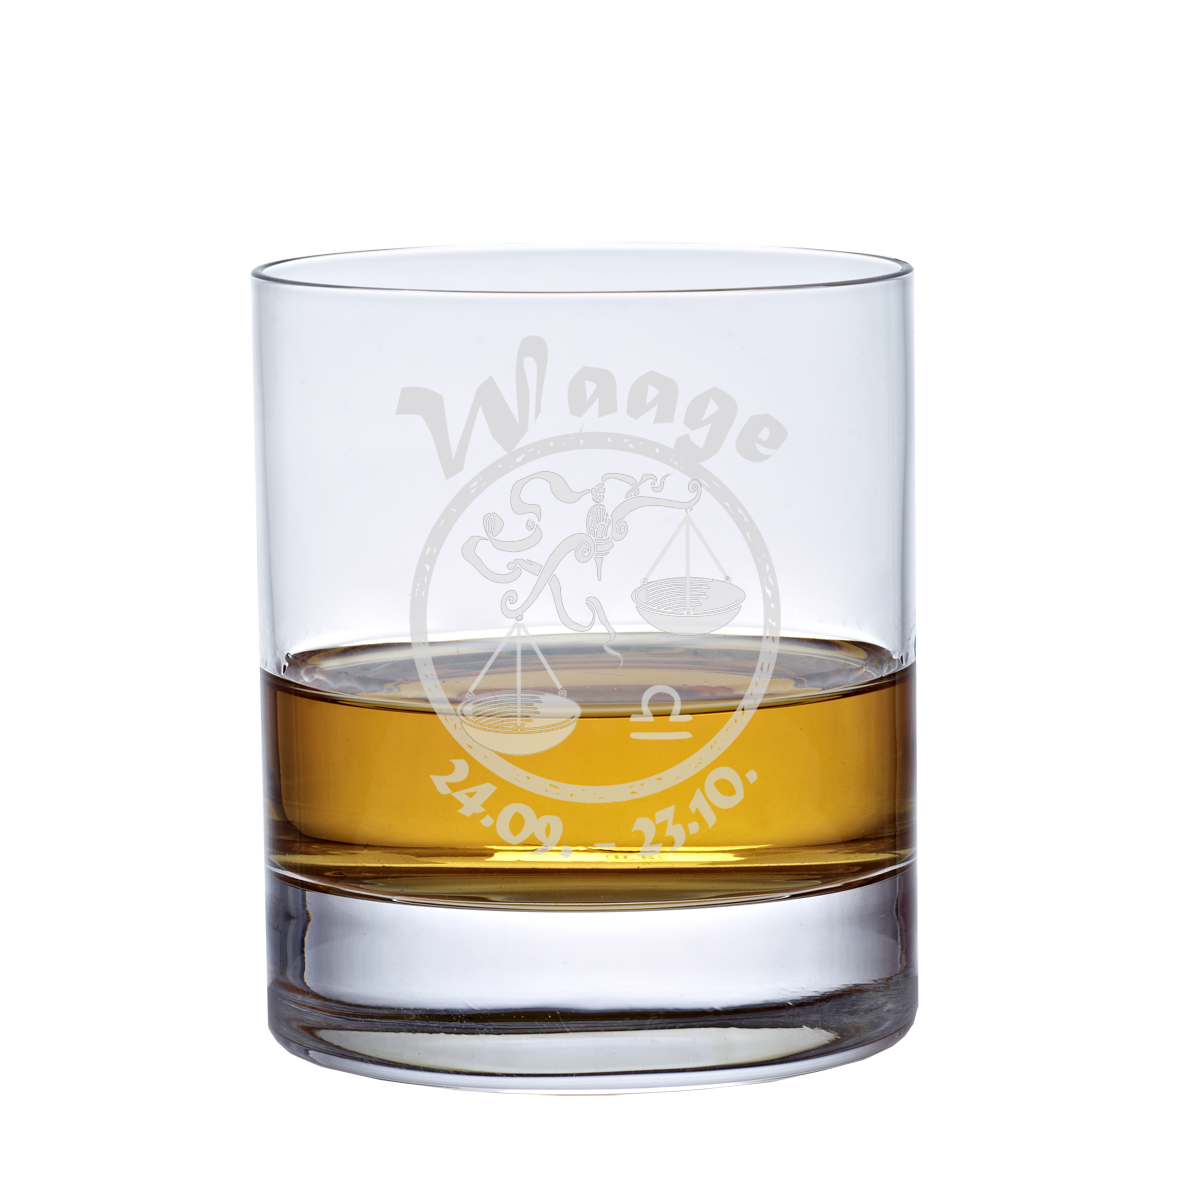 Whiskyglas (320ml) mit Sternzeichen, Lasergravur